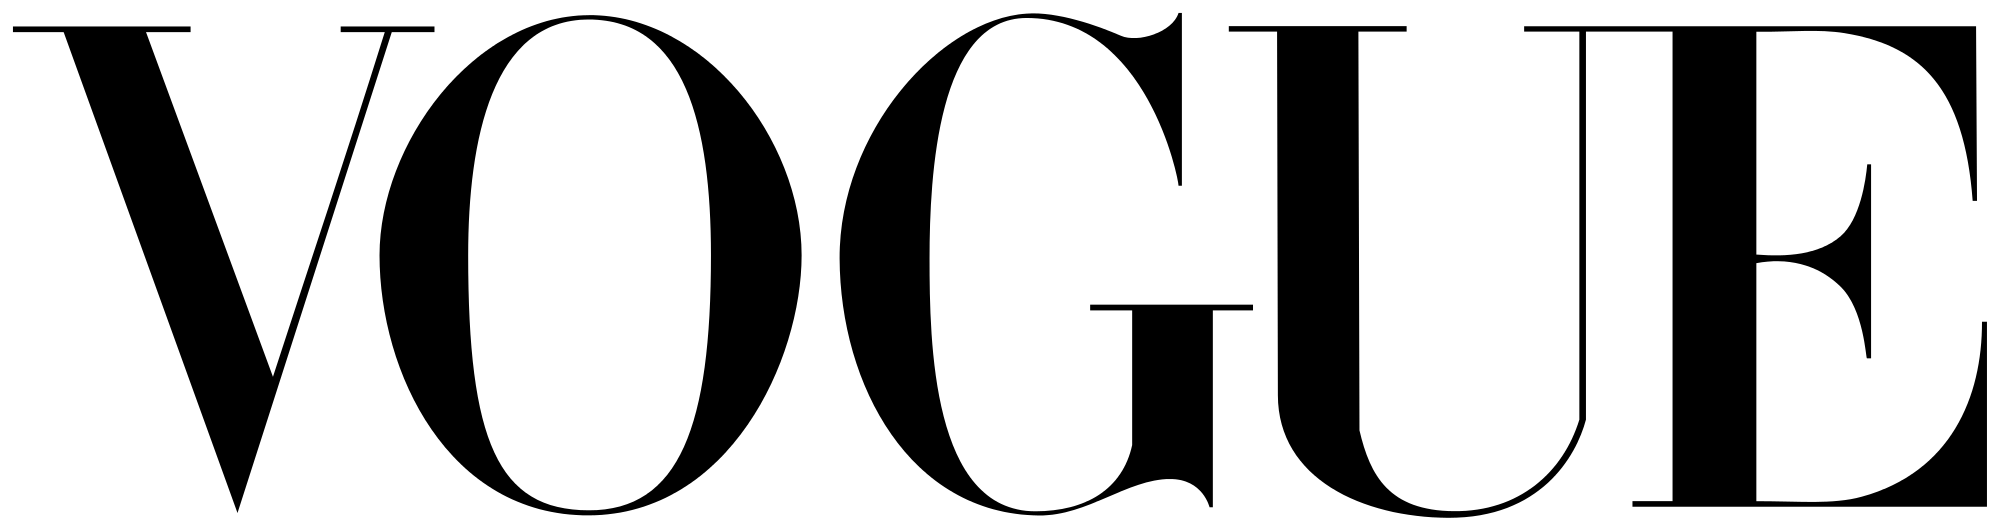 Vogue Logo - VOGUE LOGO.svg